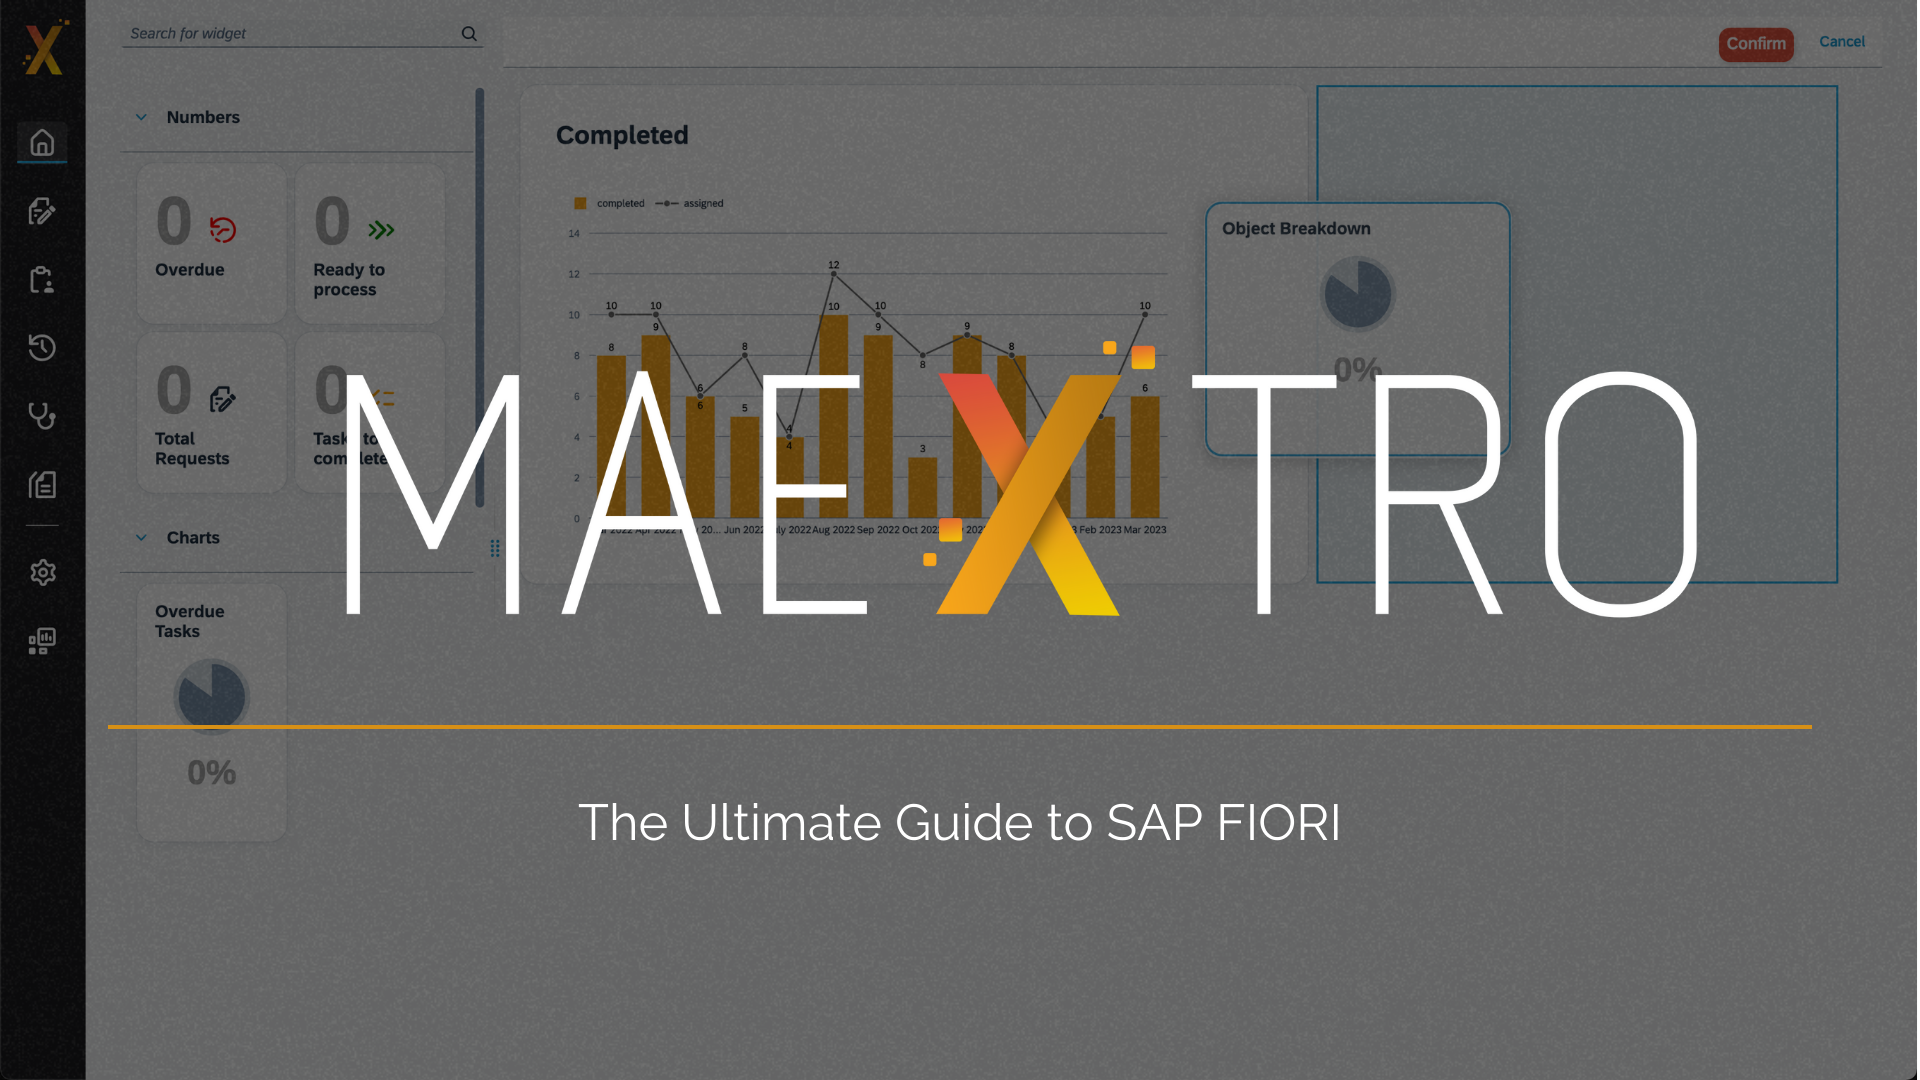 The Ultimate Guide to SAP FIORI